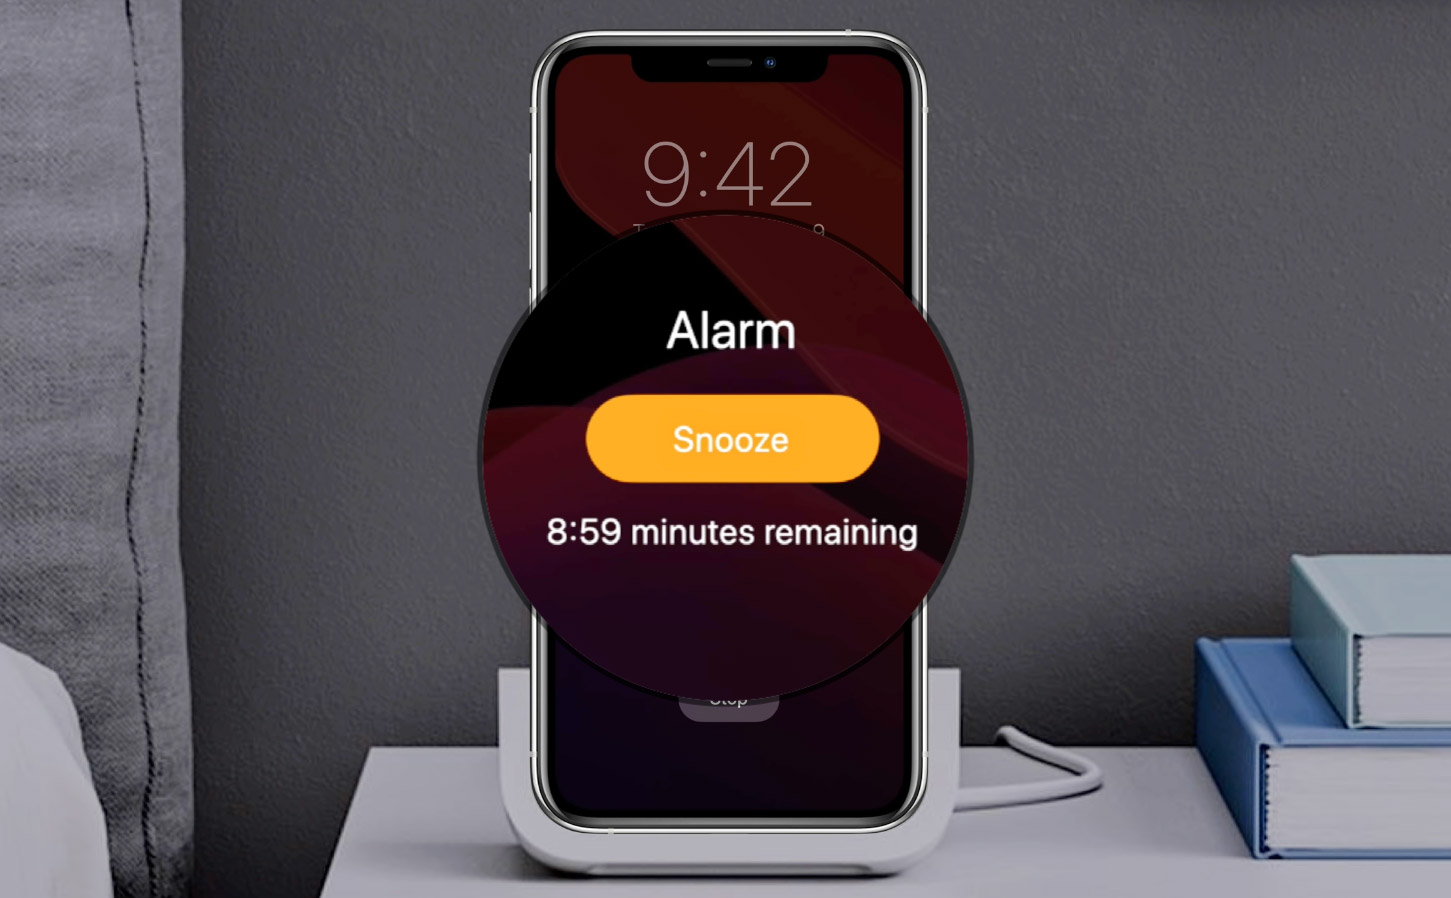 Vì sao iPhone có thời gian "snooze" báo thức đúng 9 phút